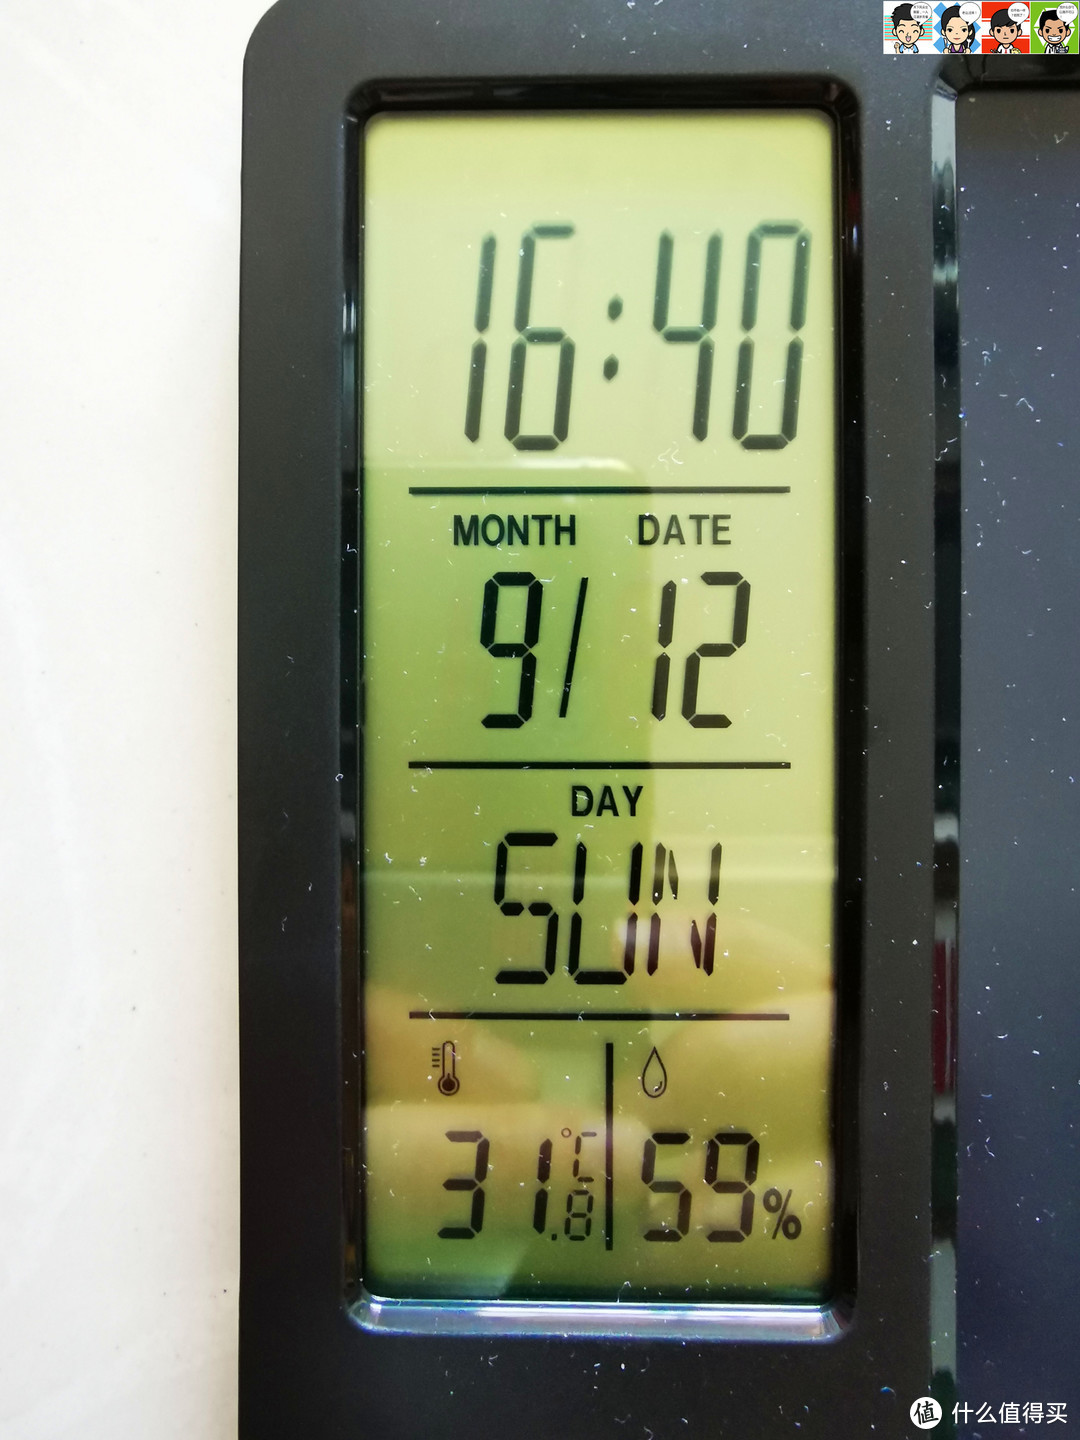 左边的液晶屏显示时间、日期、星期、温度、湿度，蛮实用的。